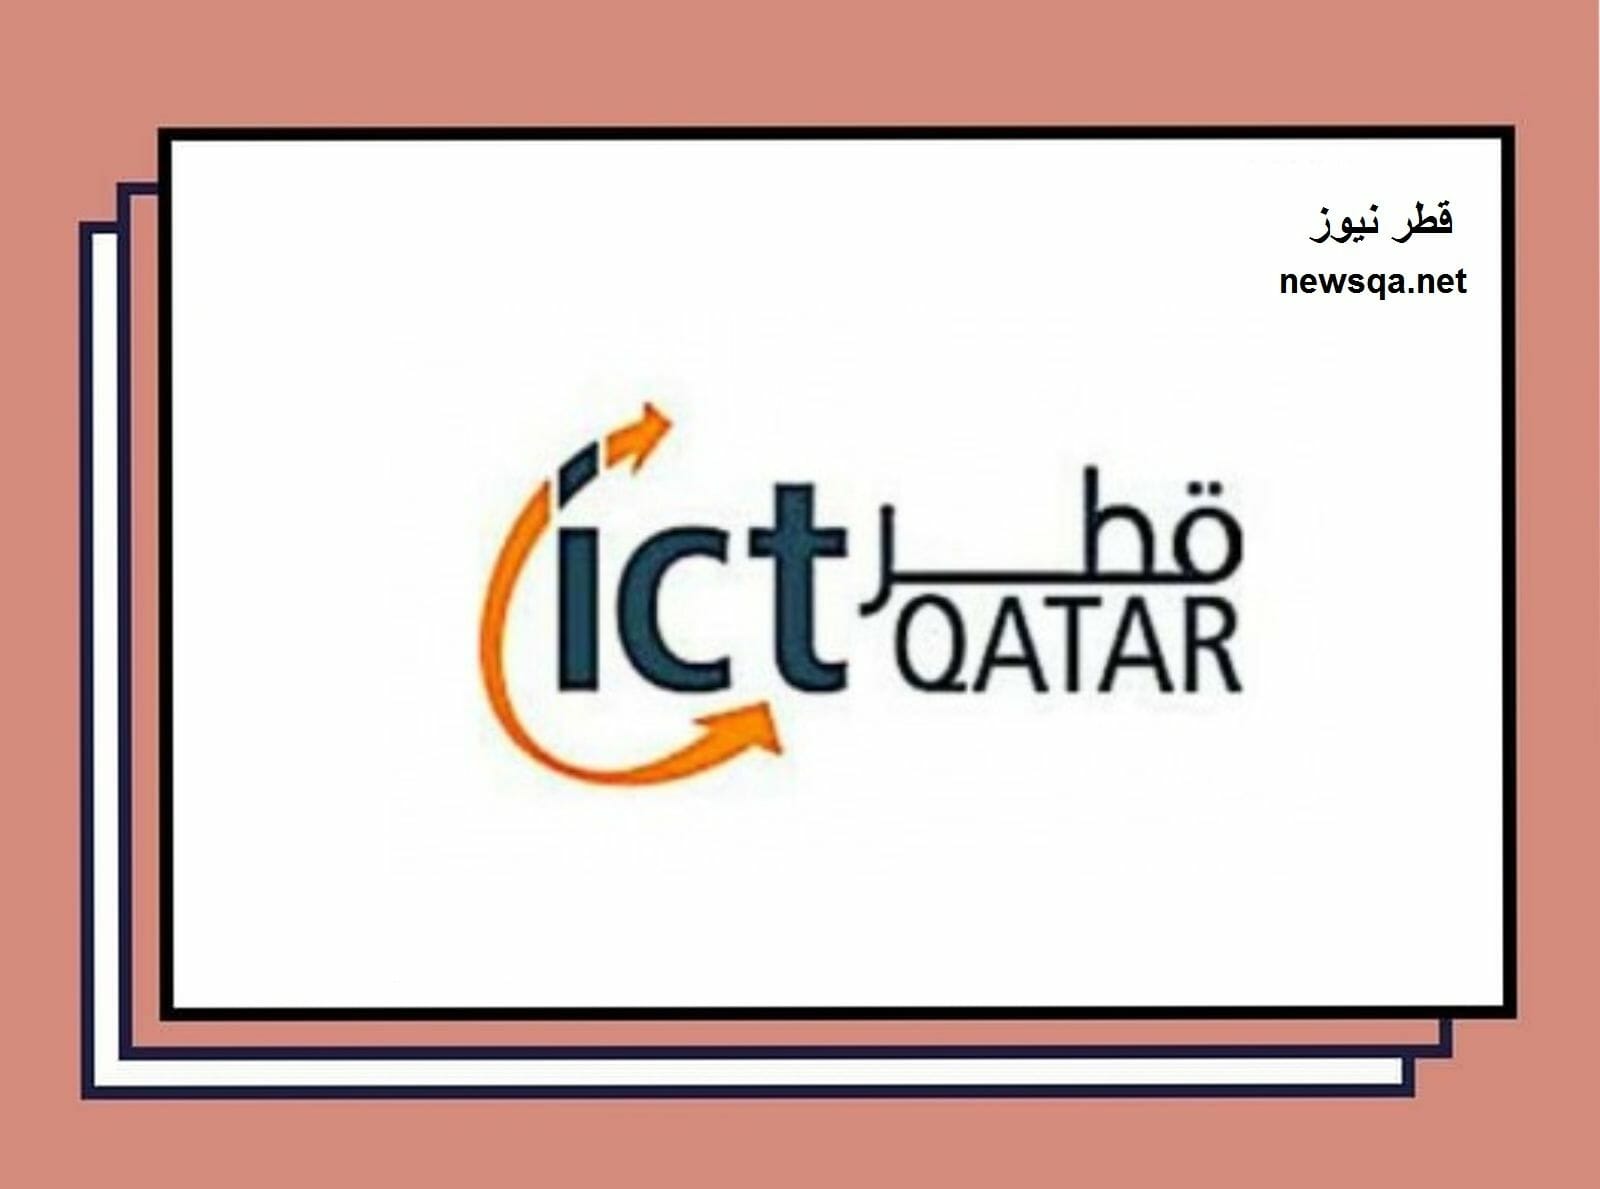 المجلس الأعلى للاتصالات وتكنولوجيا المعلومات قطر